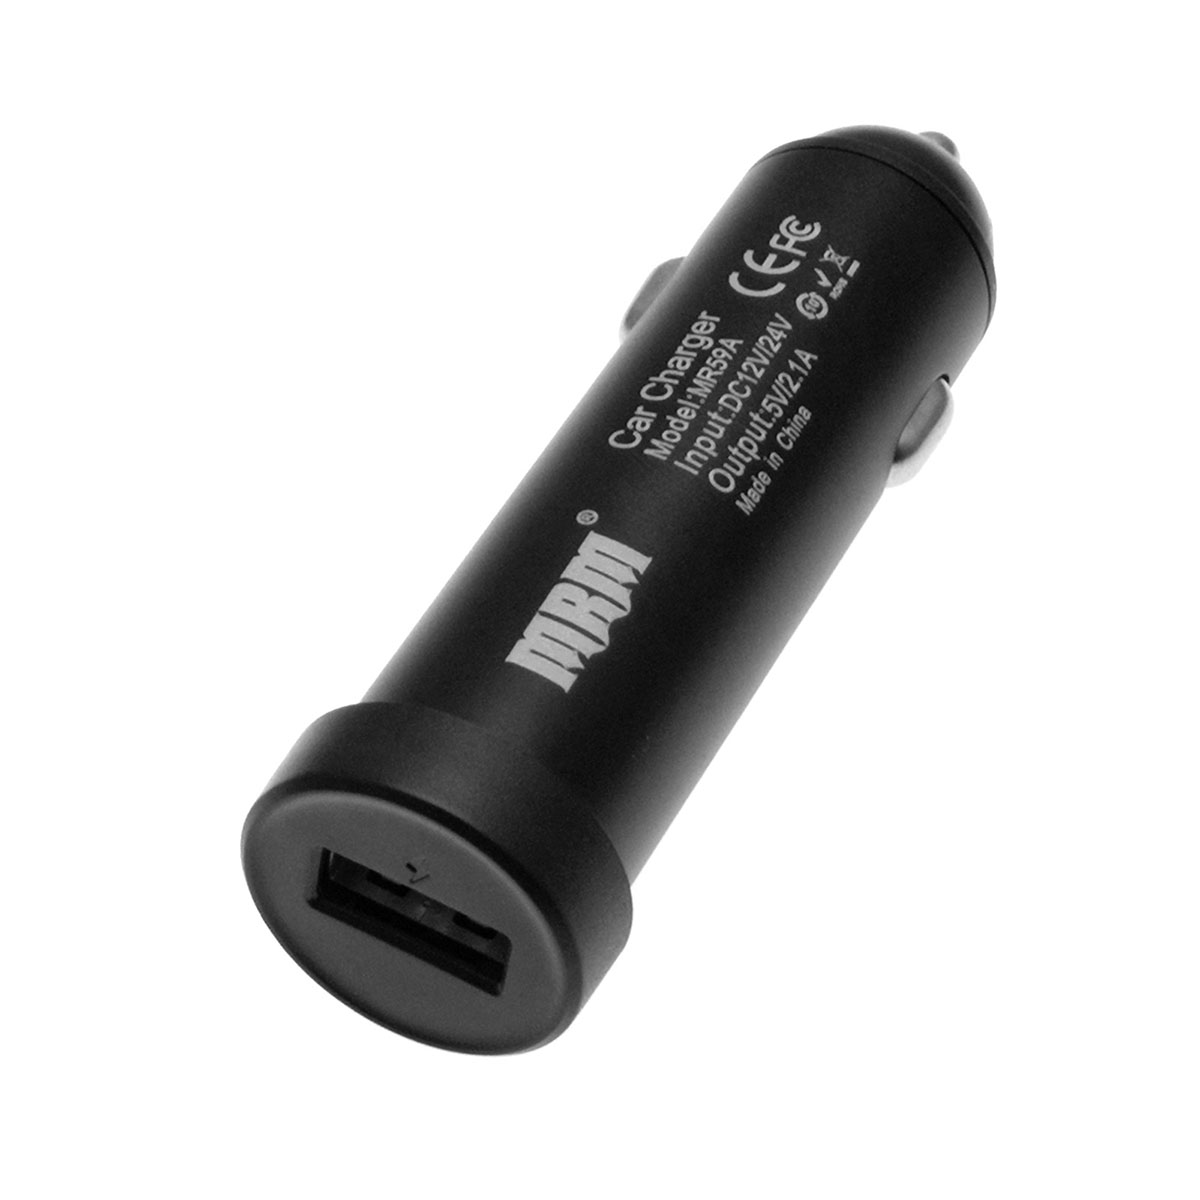 АЗУ (автомобильное зарядное устройство) MRM MR59A на 1 USB, 5V-2.1A, алюминиевый корпус, тех.пакет, цвет черный.